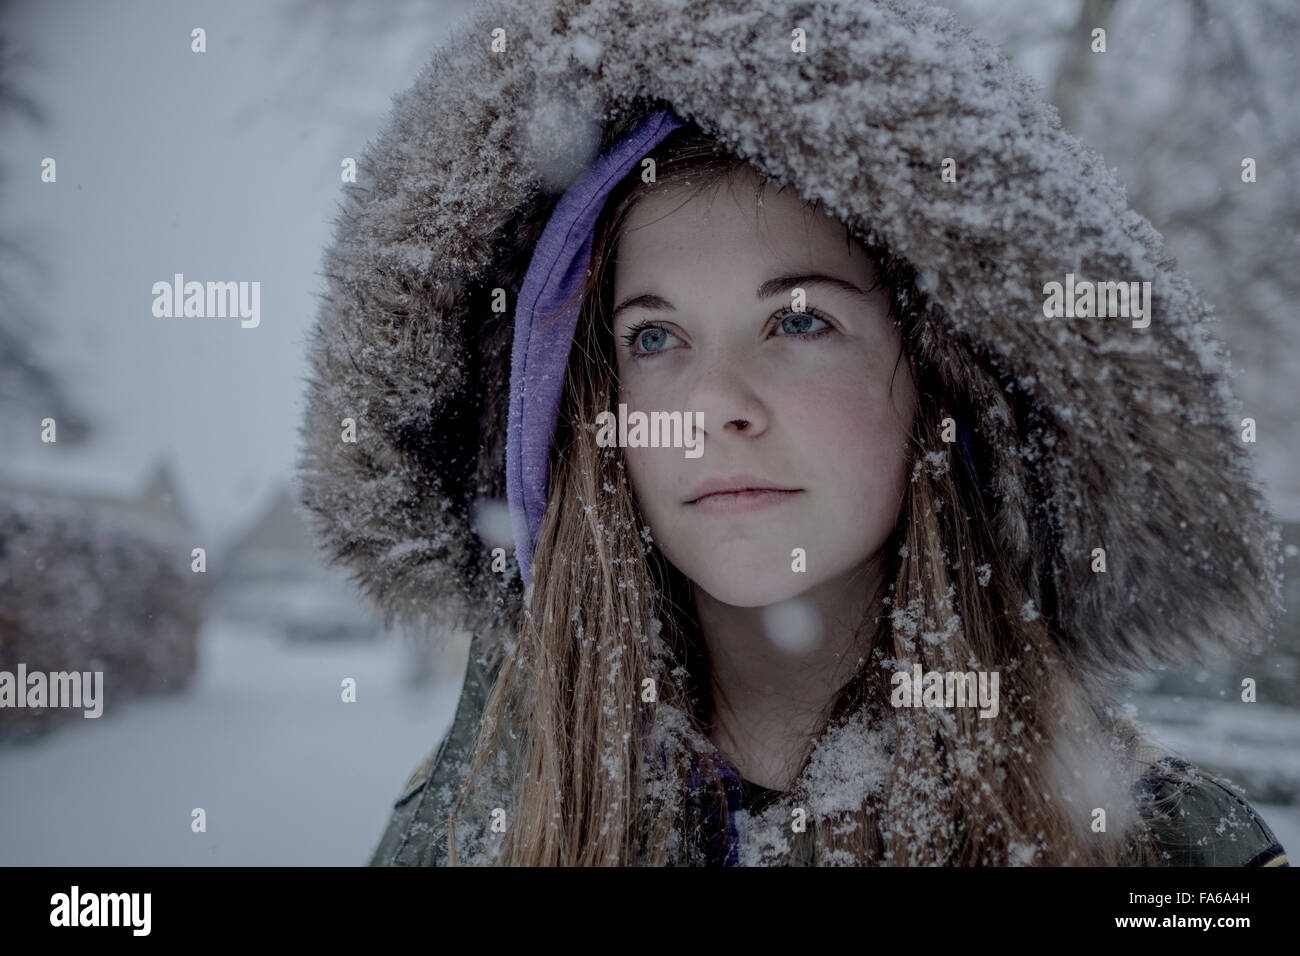 Teenager-Mädchen tragen eine Schnee bedeckt pelzigen Kapuze parka  Stockfotografie - Alamy